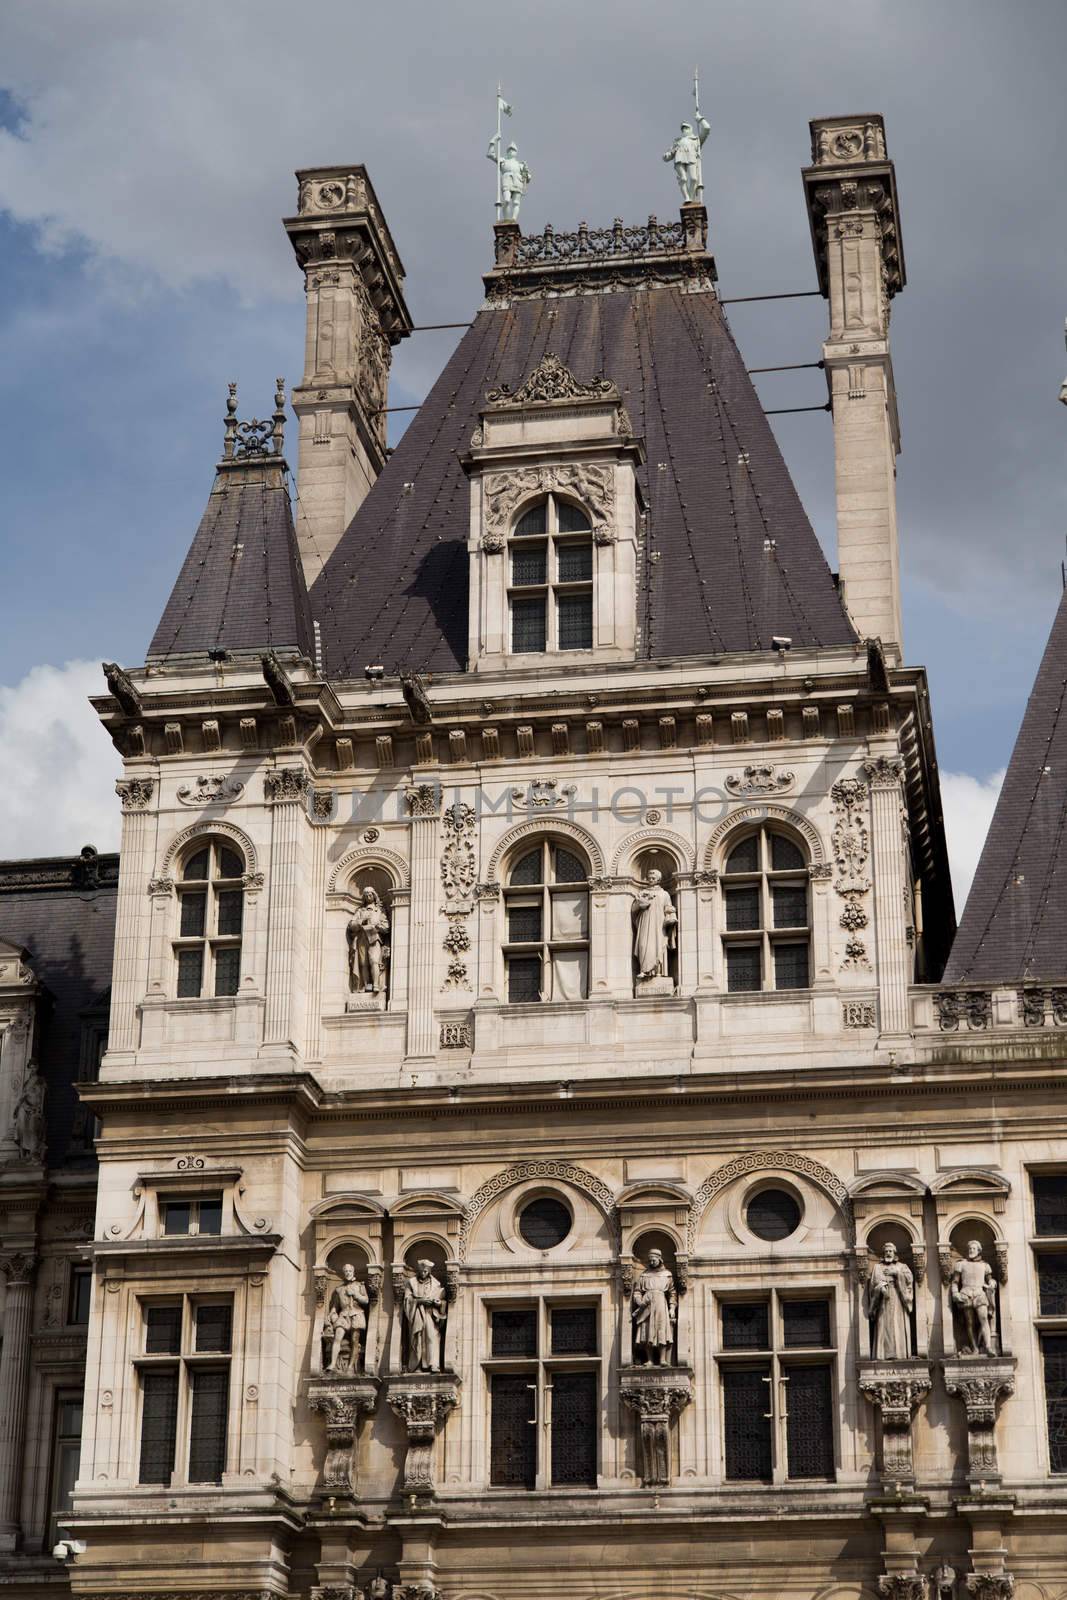 The Hotel de Ville or Paris city hall